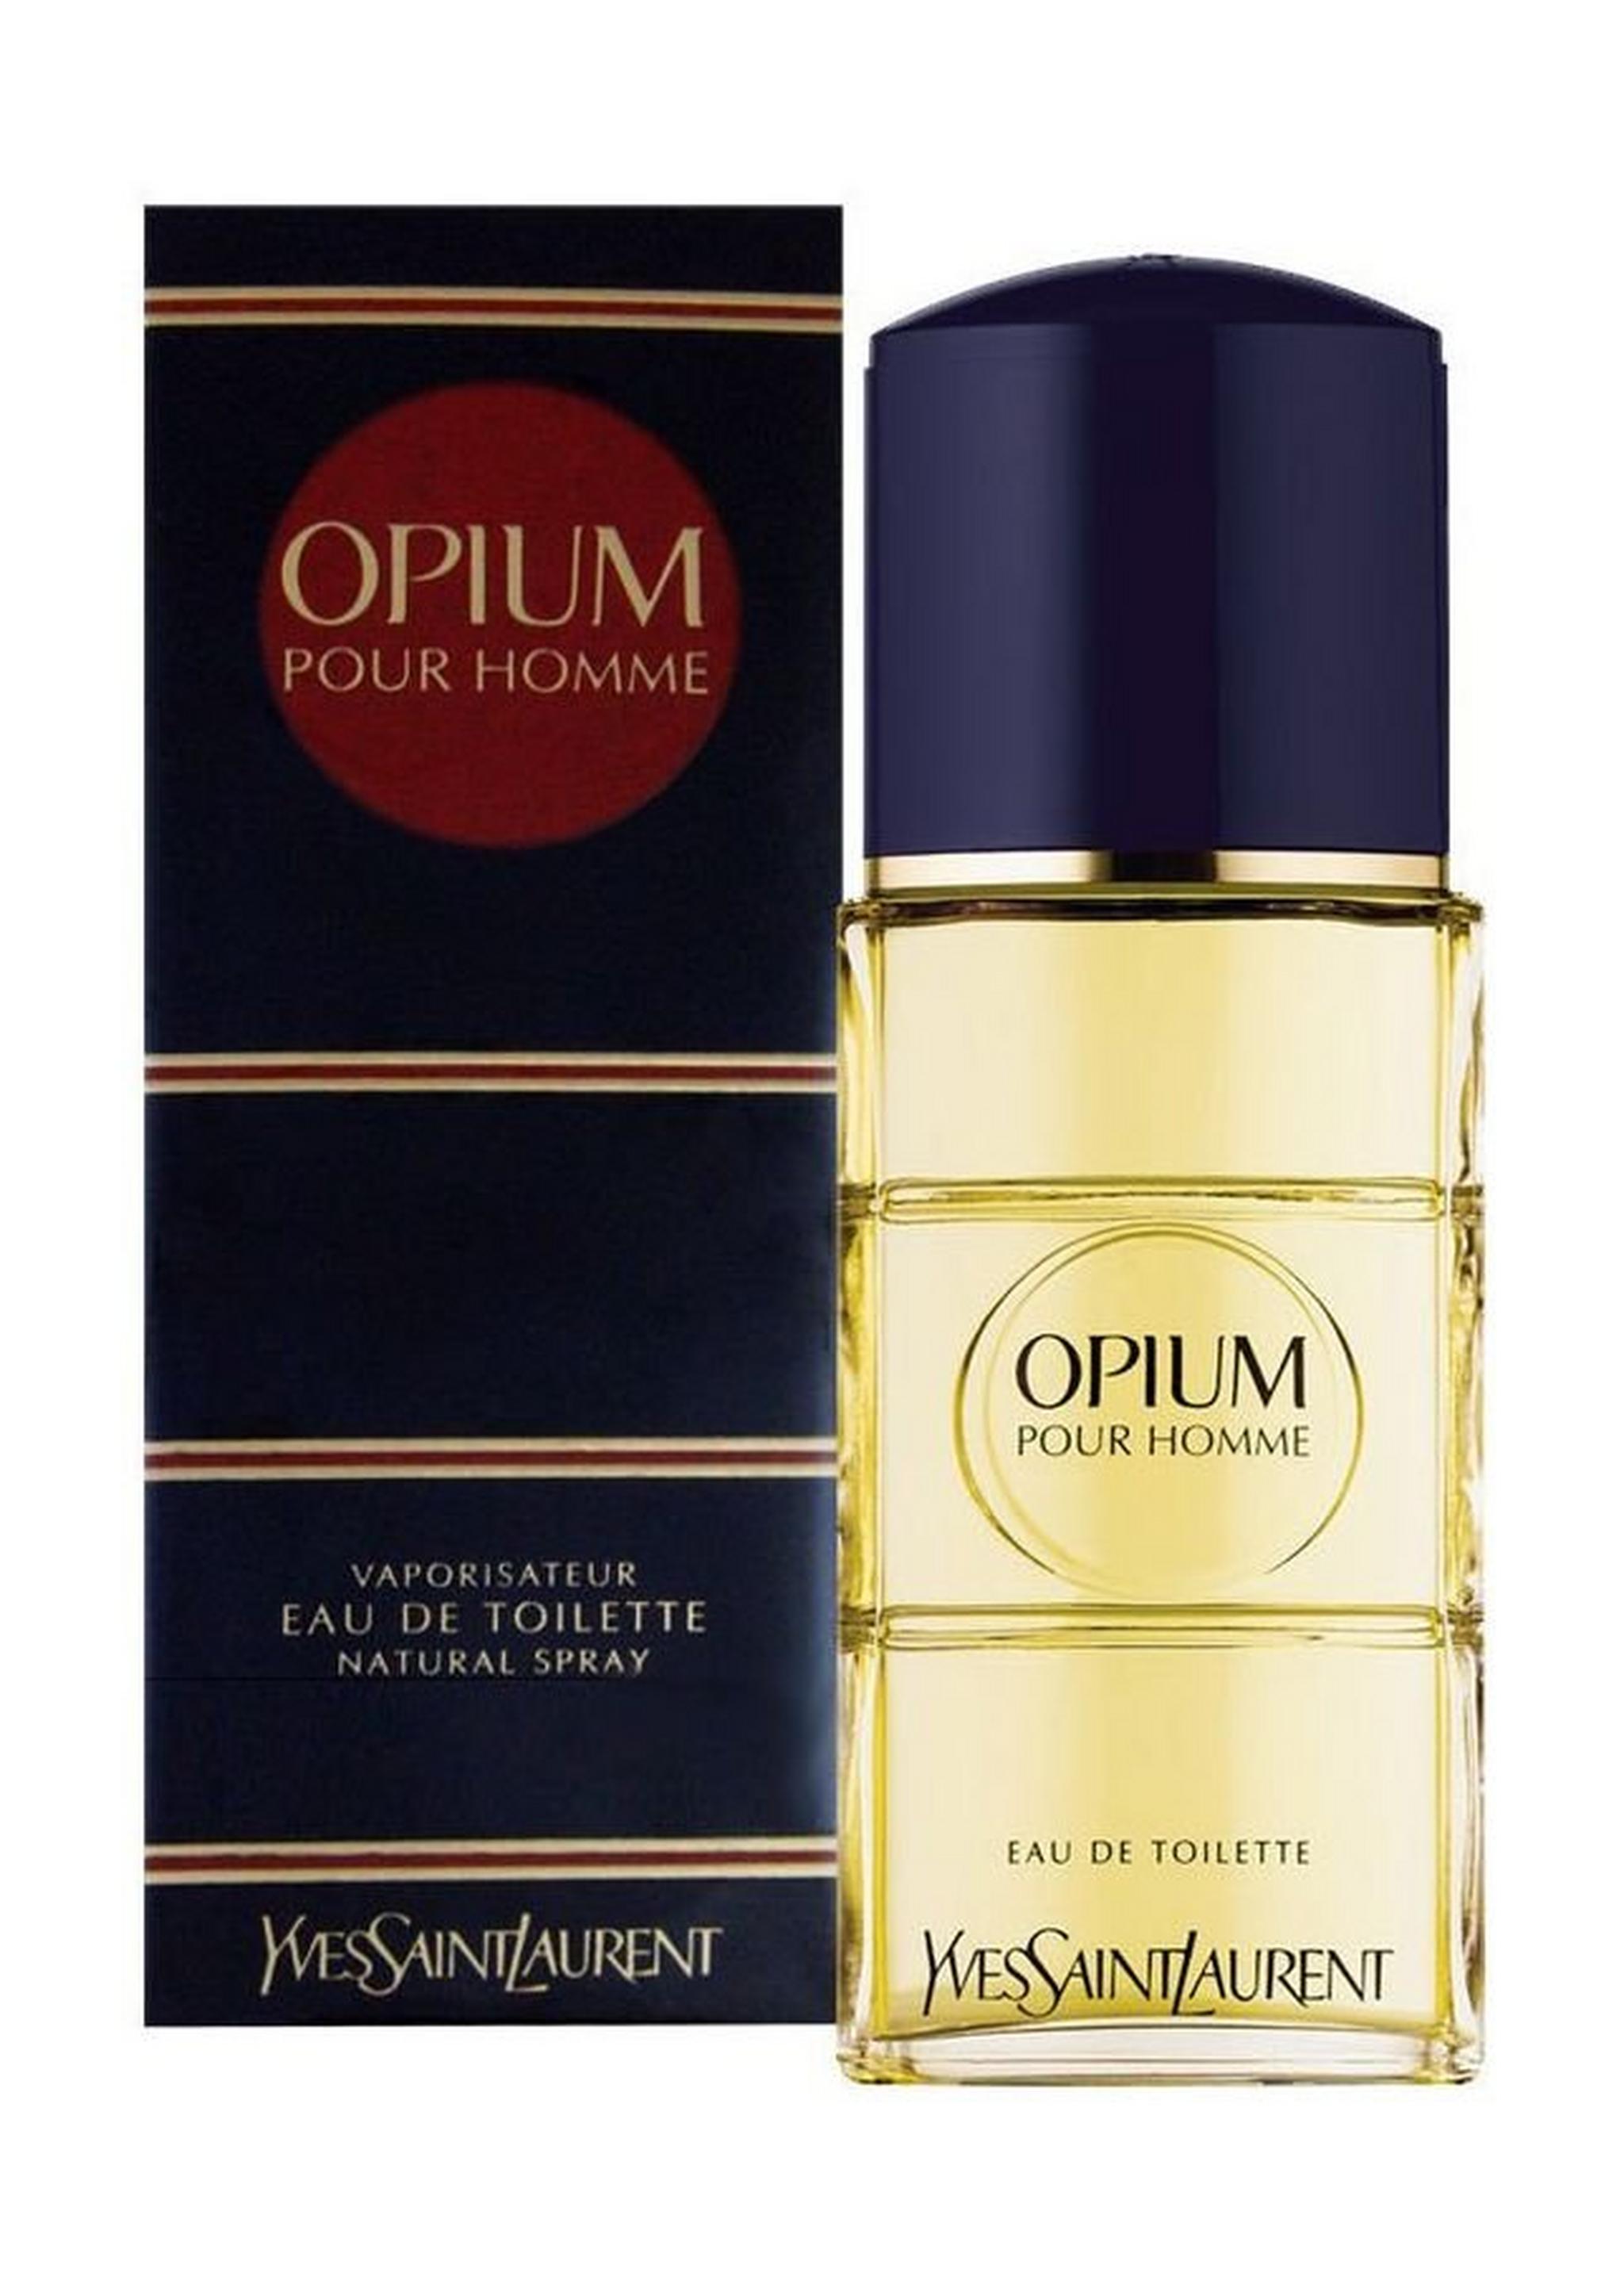 Opium Pour Homme Yves Saint Laurent Eau de Toilette 100ml